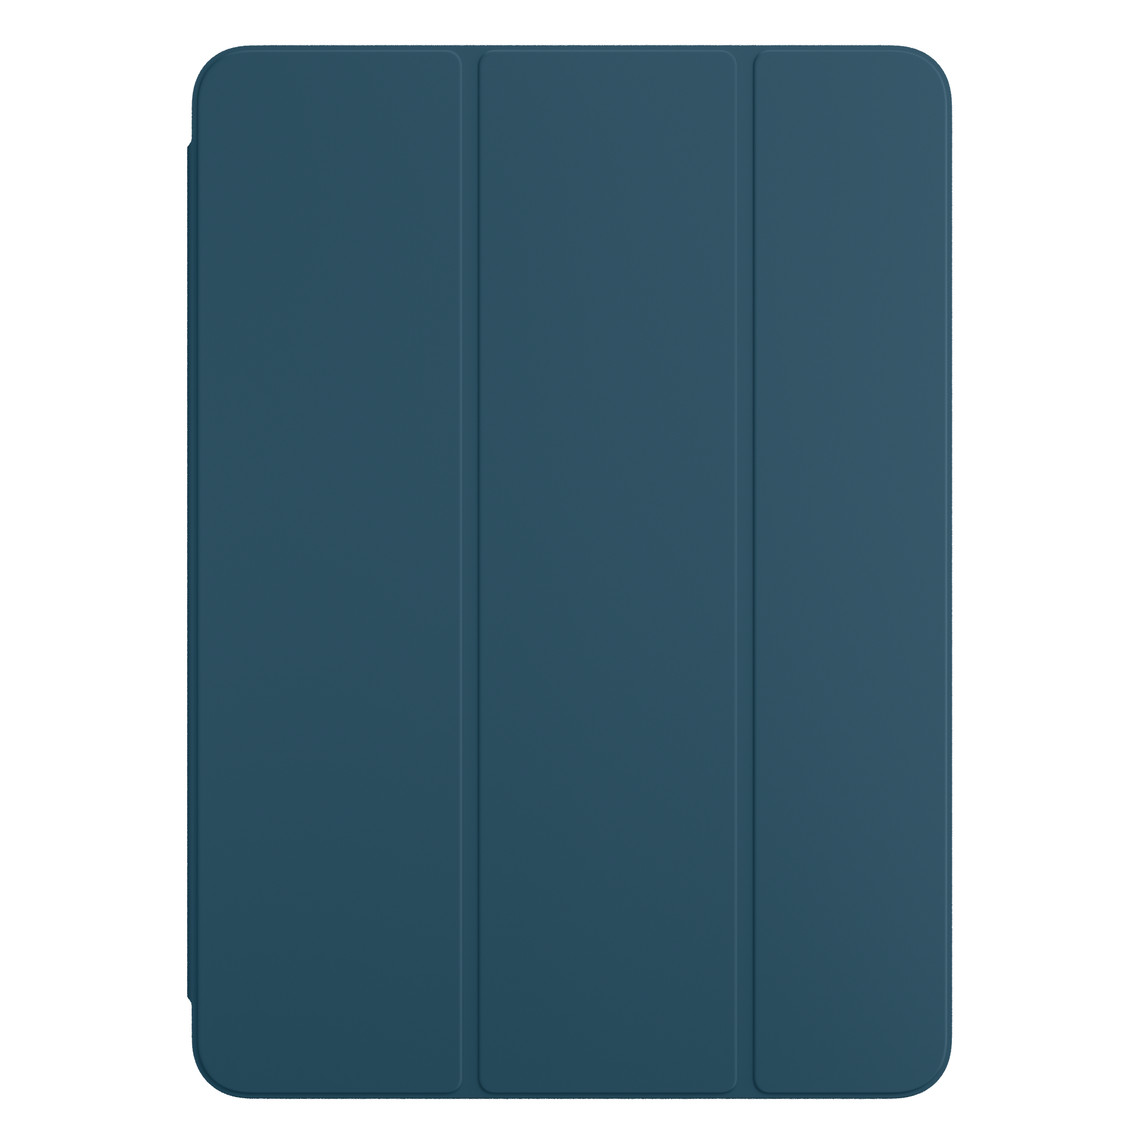 Widoczne od przodu etui Smart Folio w kolorze morskim do iPada Pro.